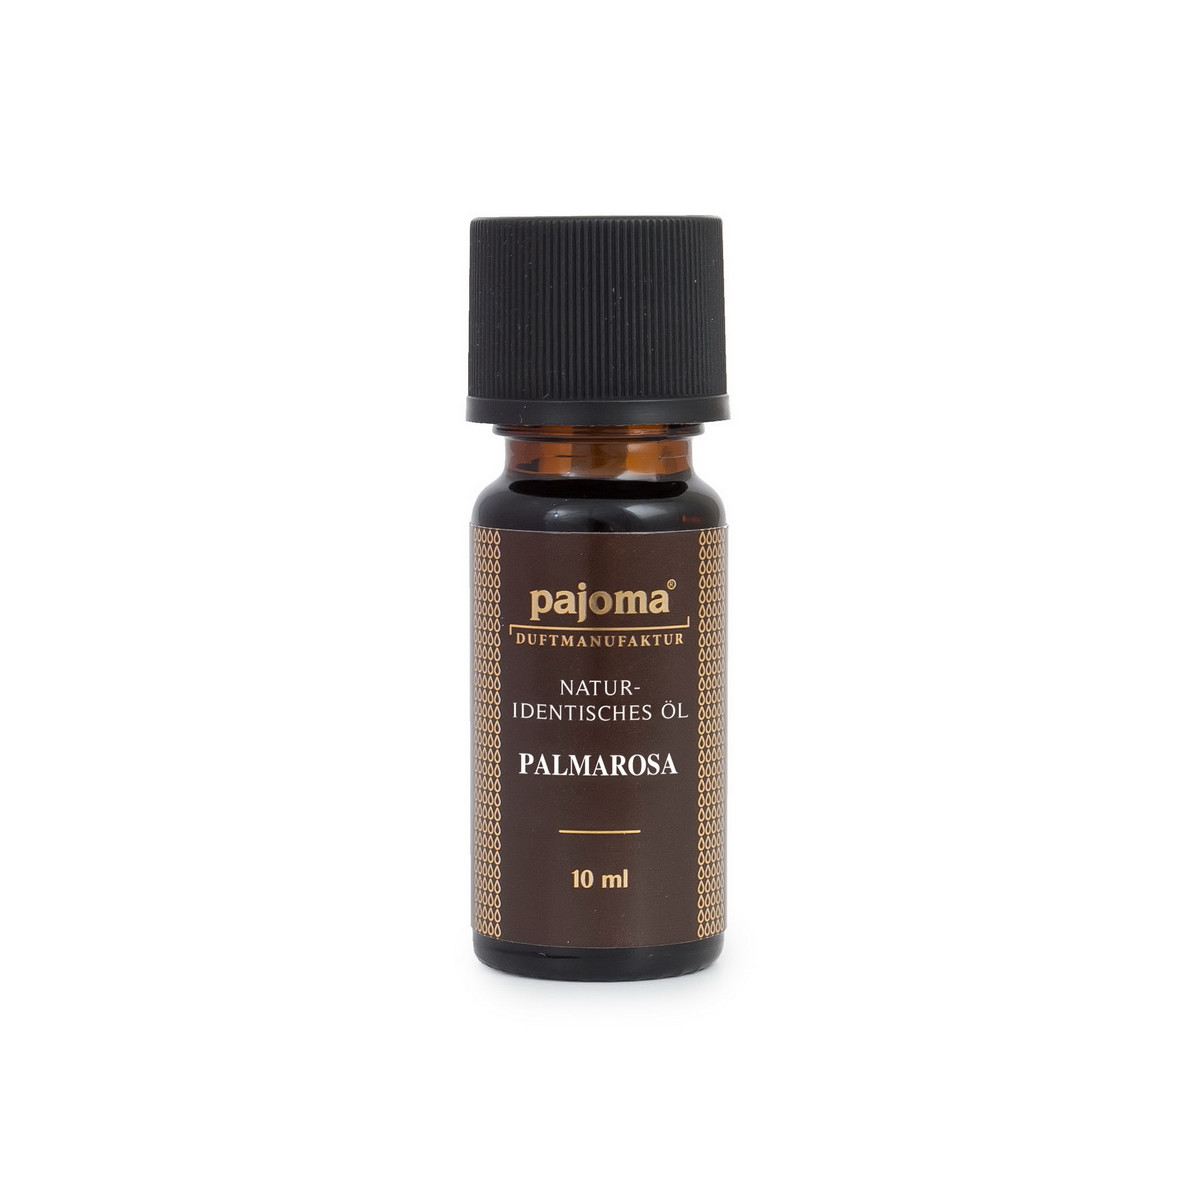 Palmarosa - 10 ml Pajoma 100% ätherisches Öl